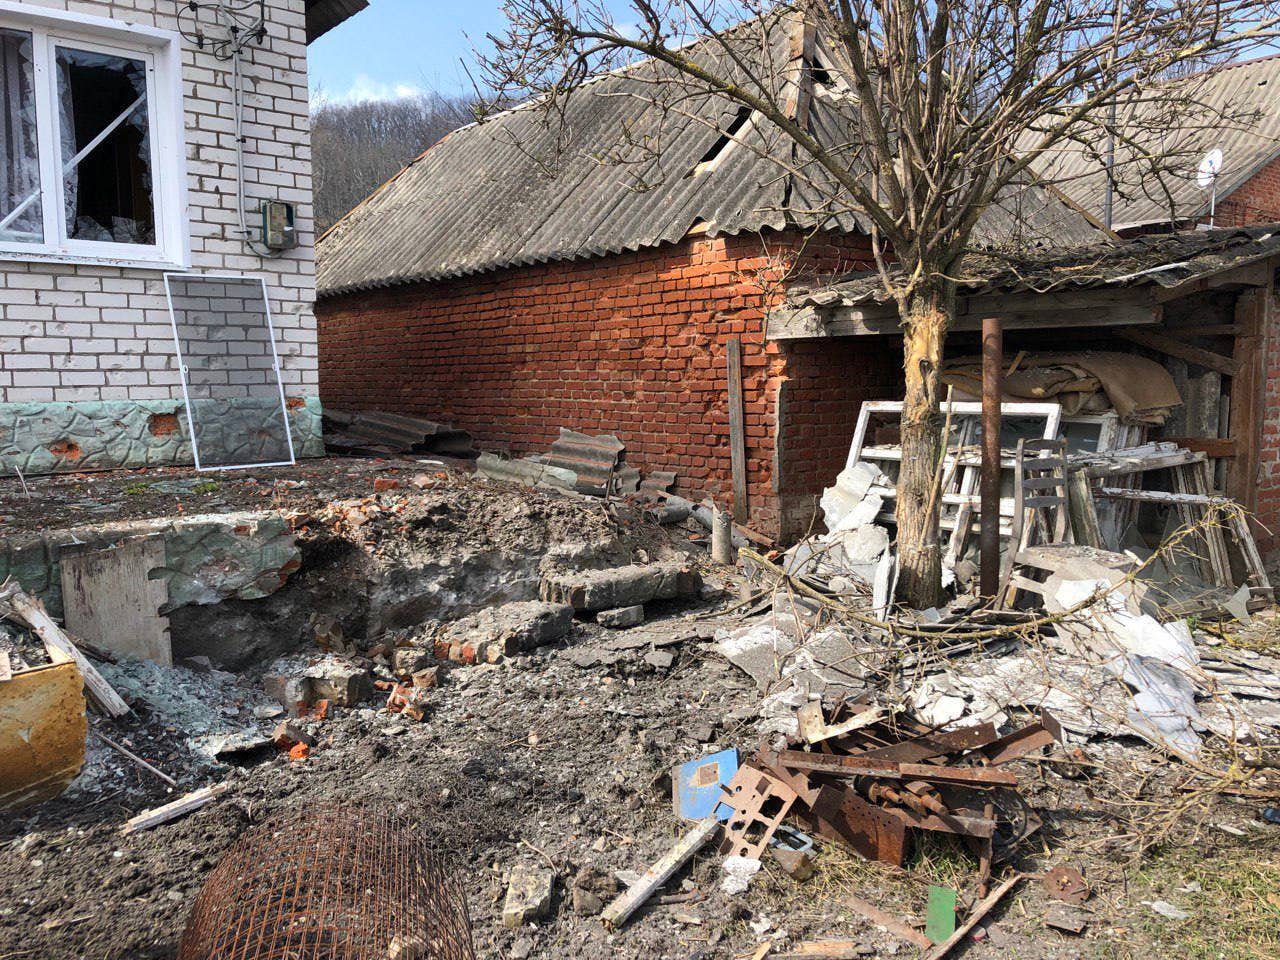 Belgorod Oblast Gov. Vyacheslav Gladkov claims houses were damaged by Ukrainian mortar fire on Wednesday. (Vyacheslav Gladkov Telegram photo)